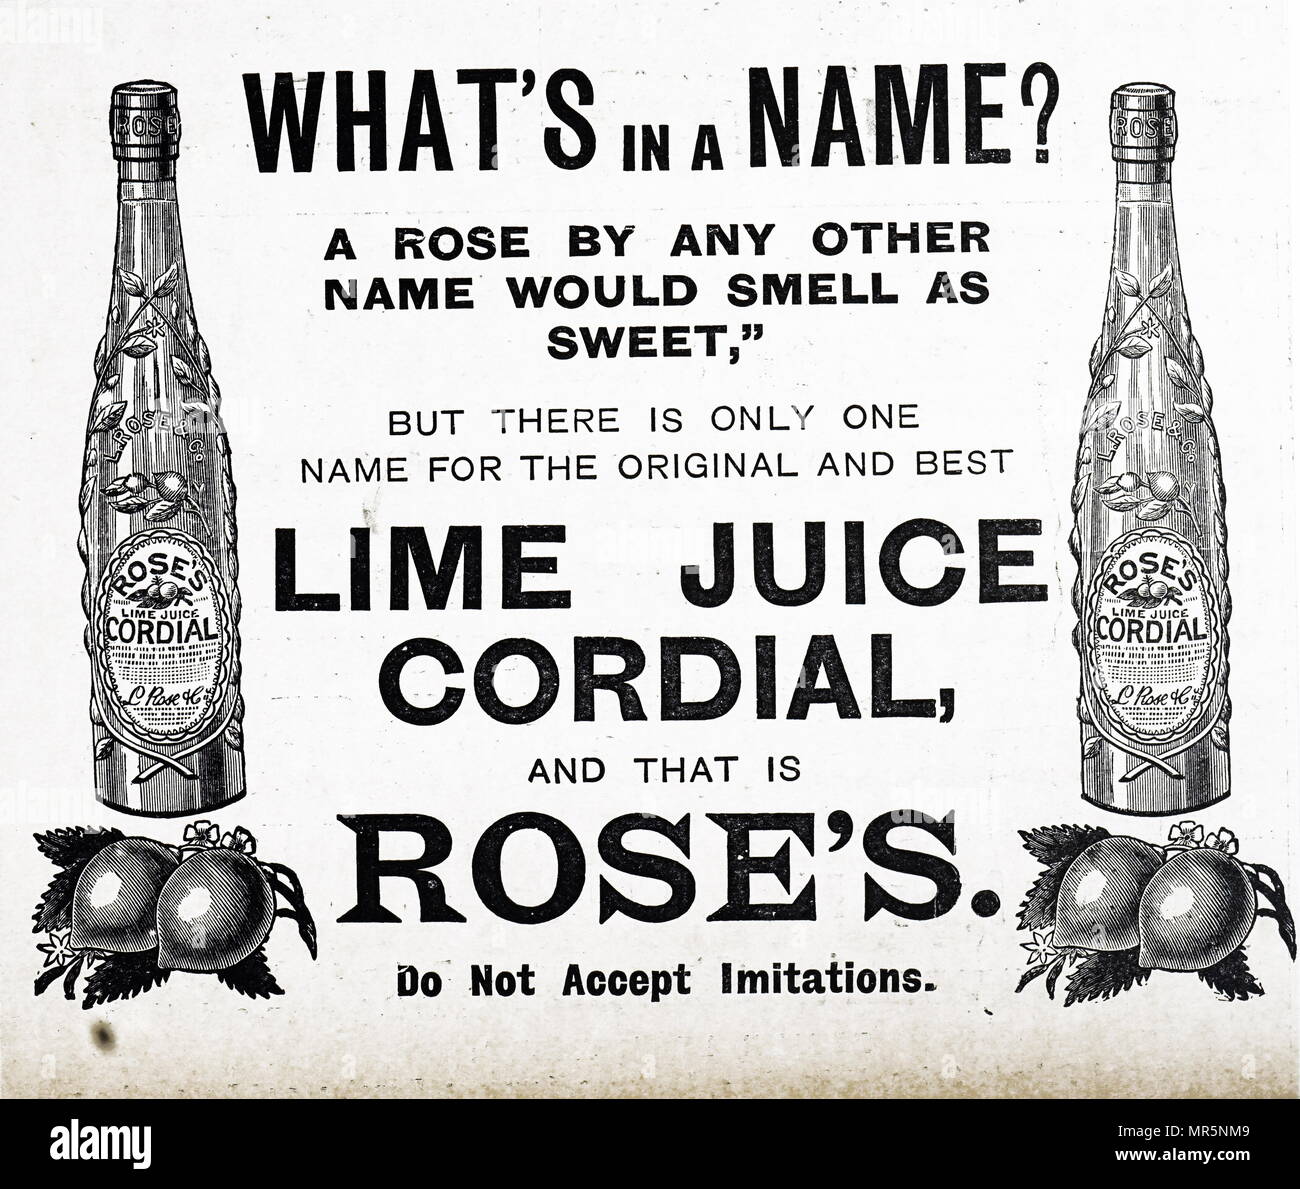 Werbung für Rose's Lime Juice Cordial. Vom 19. Jahrhundert Stockfotografie  - Alamy